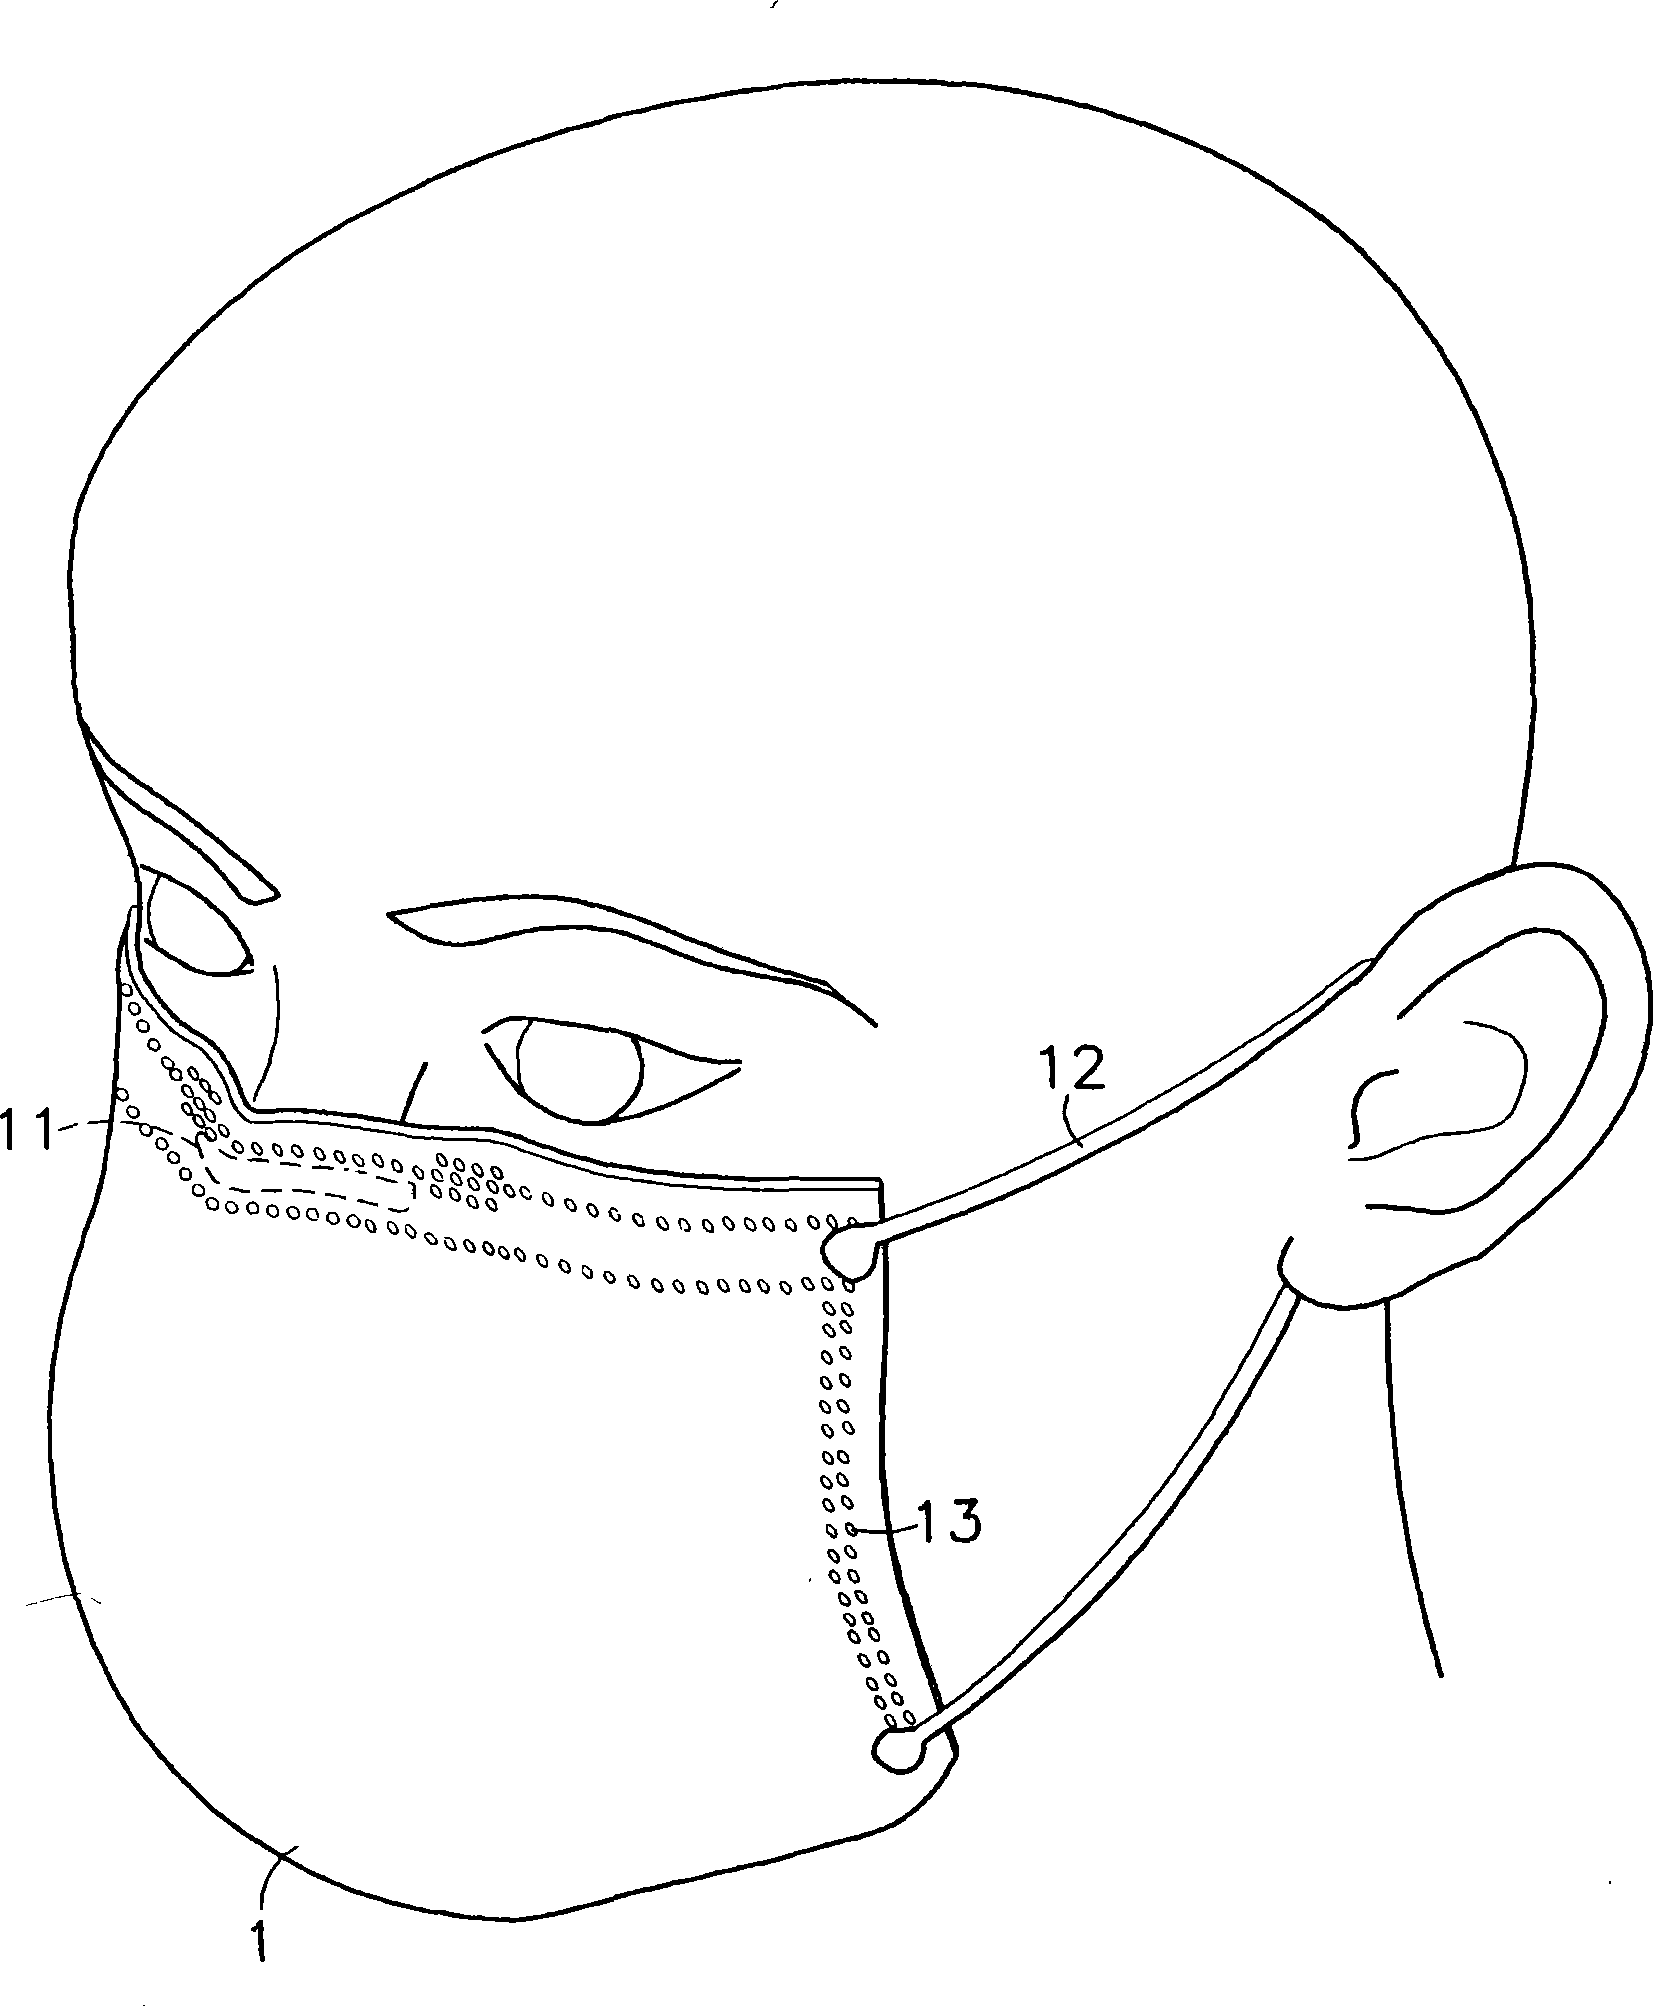 Gauze mask structure